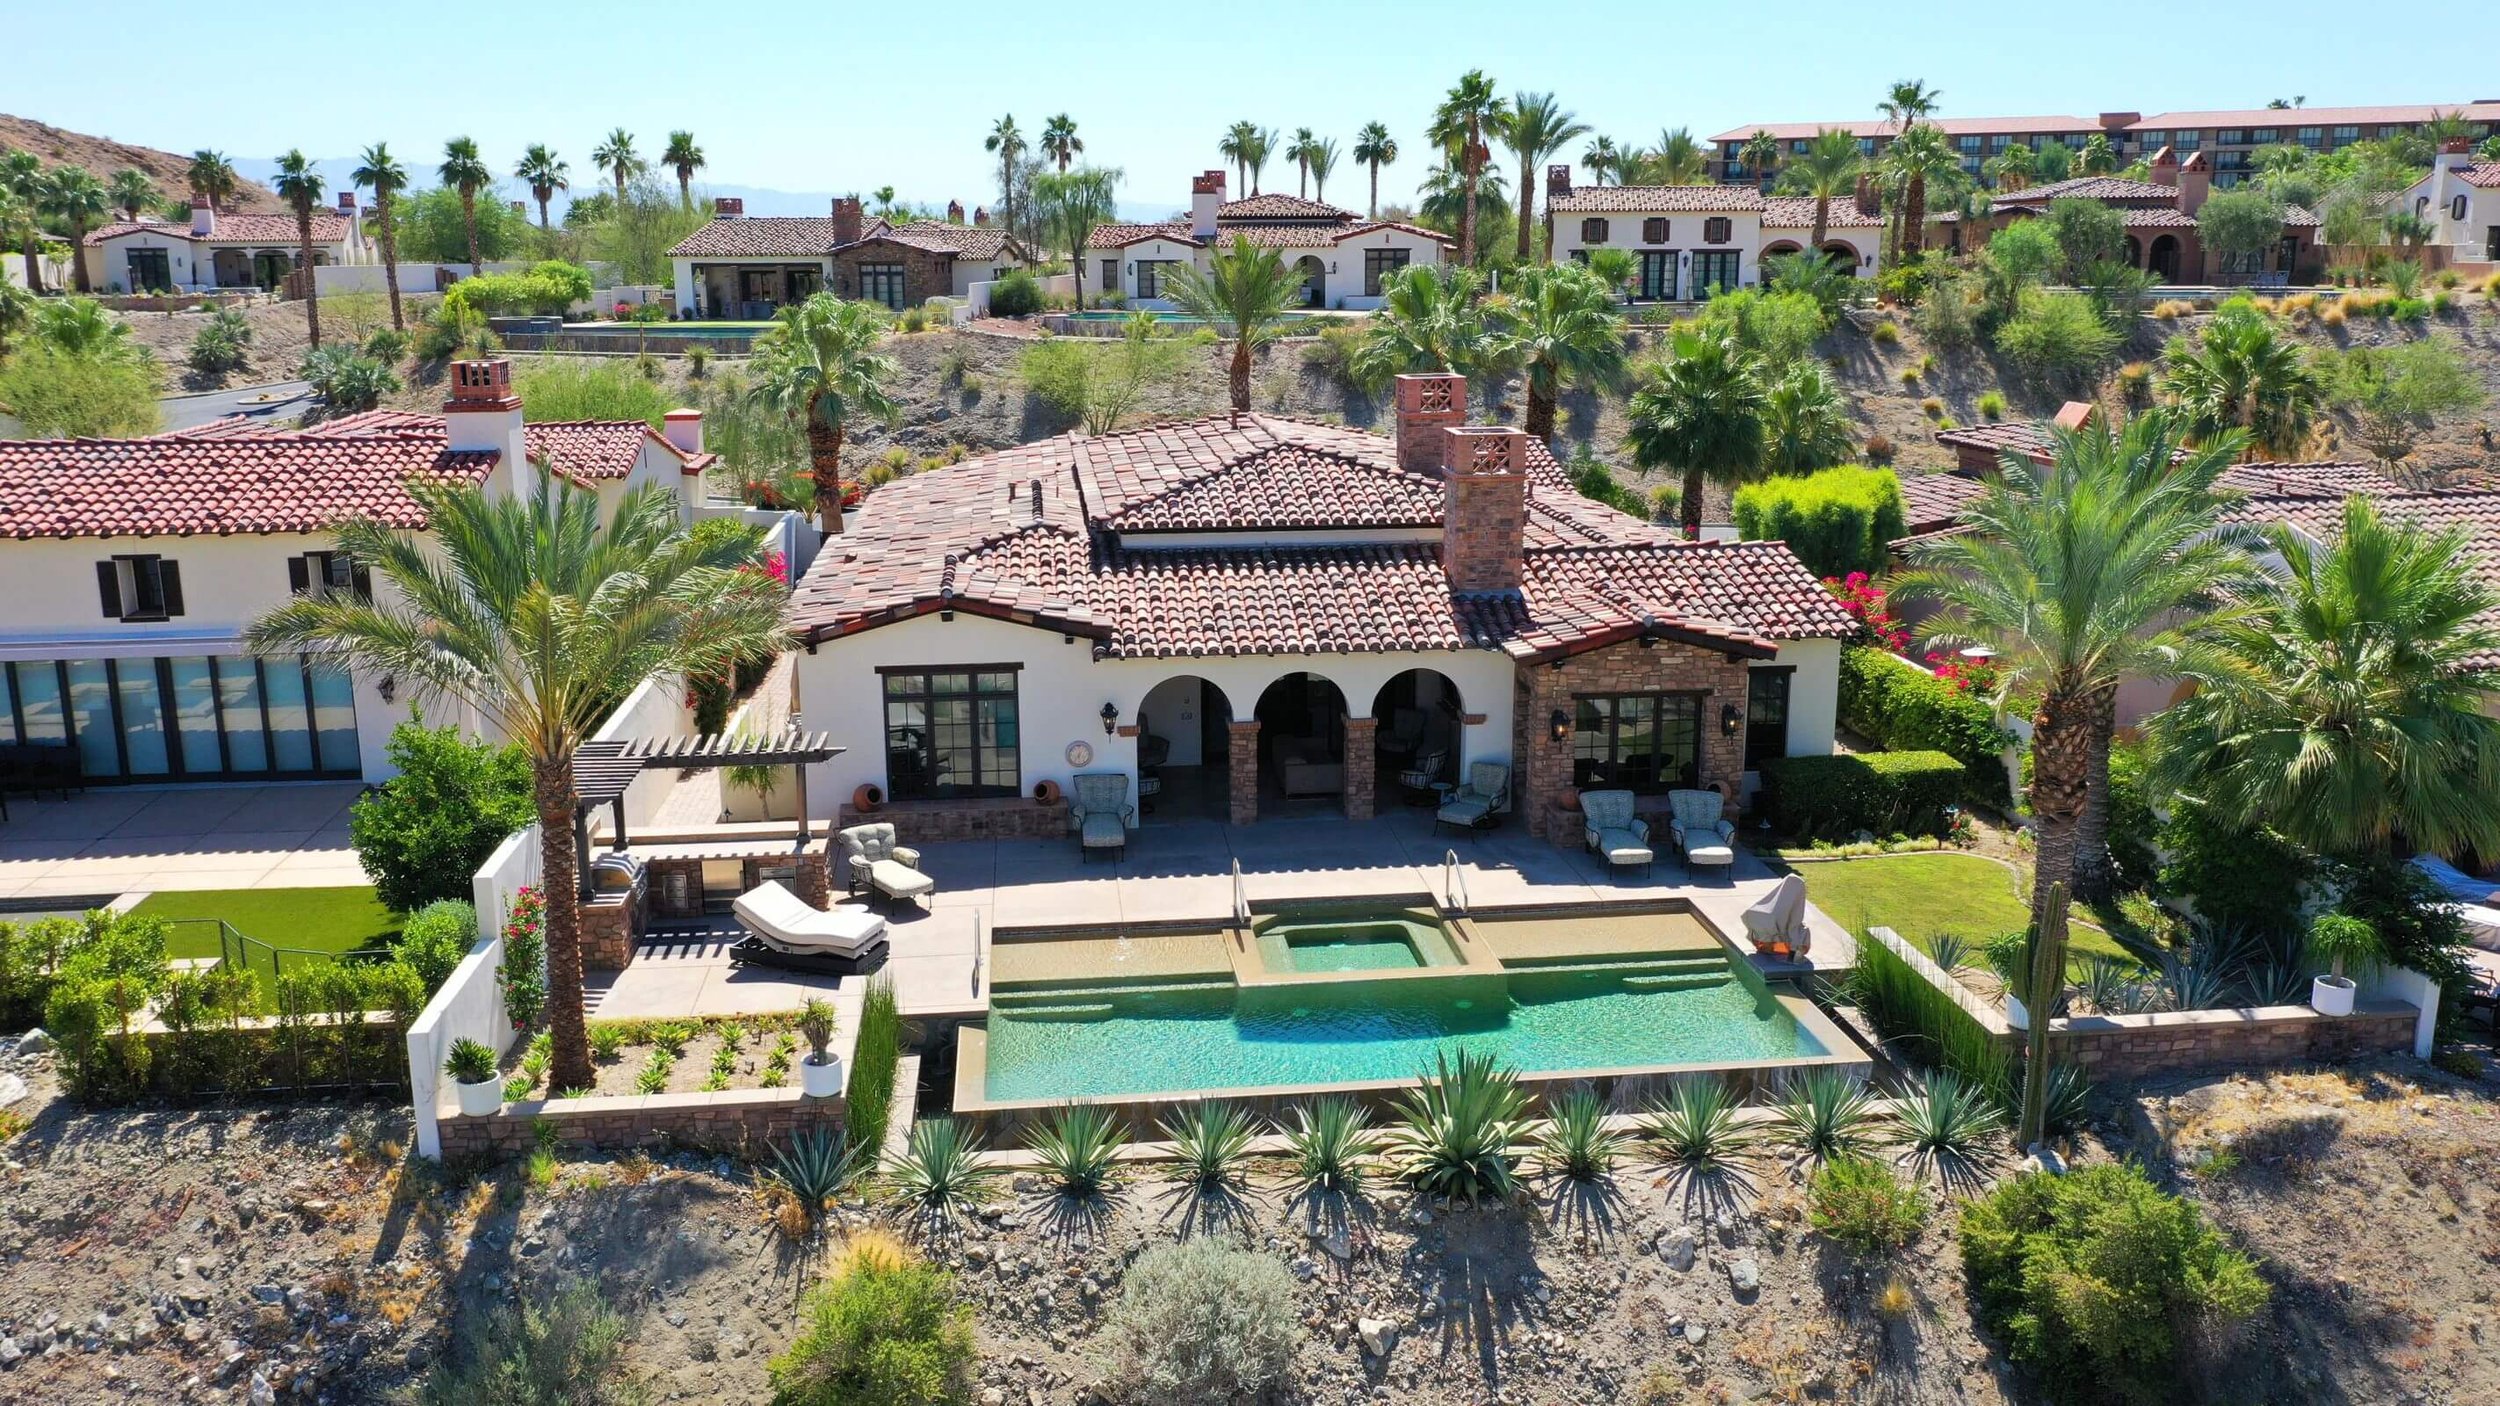 Villas of Mirada Rancho Mirage 92270